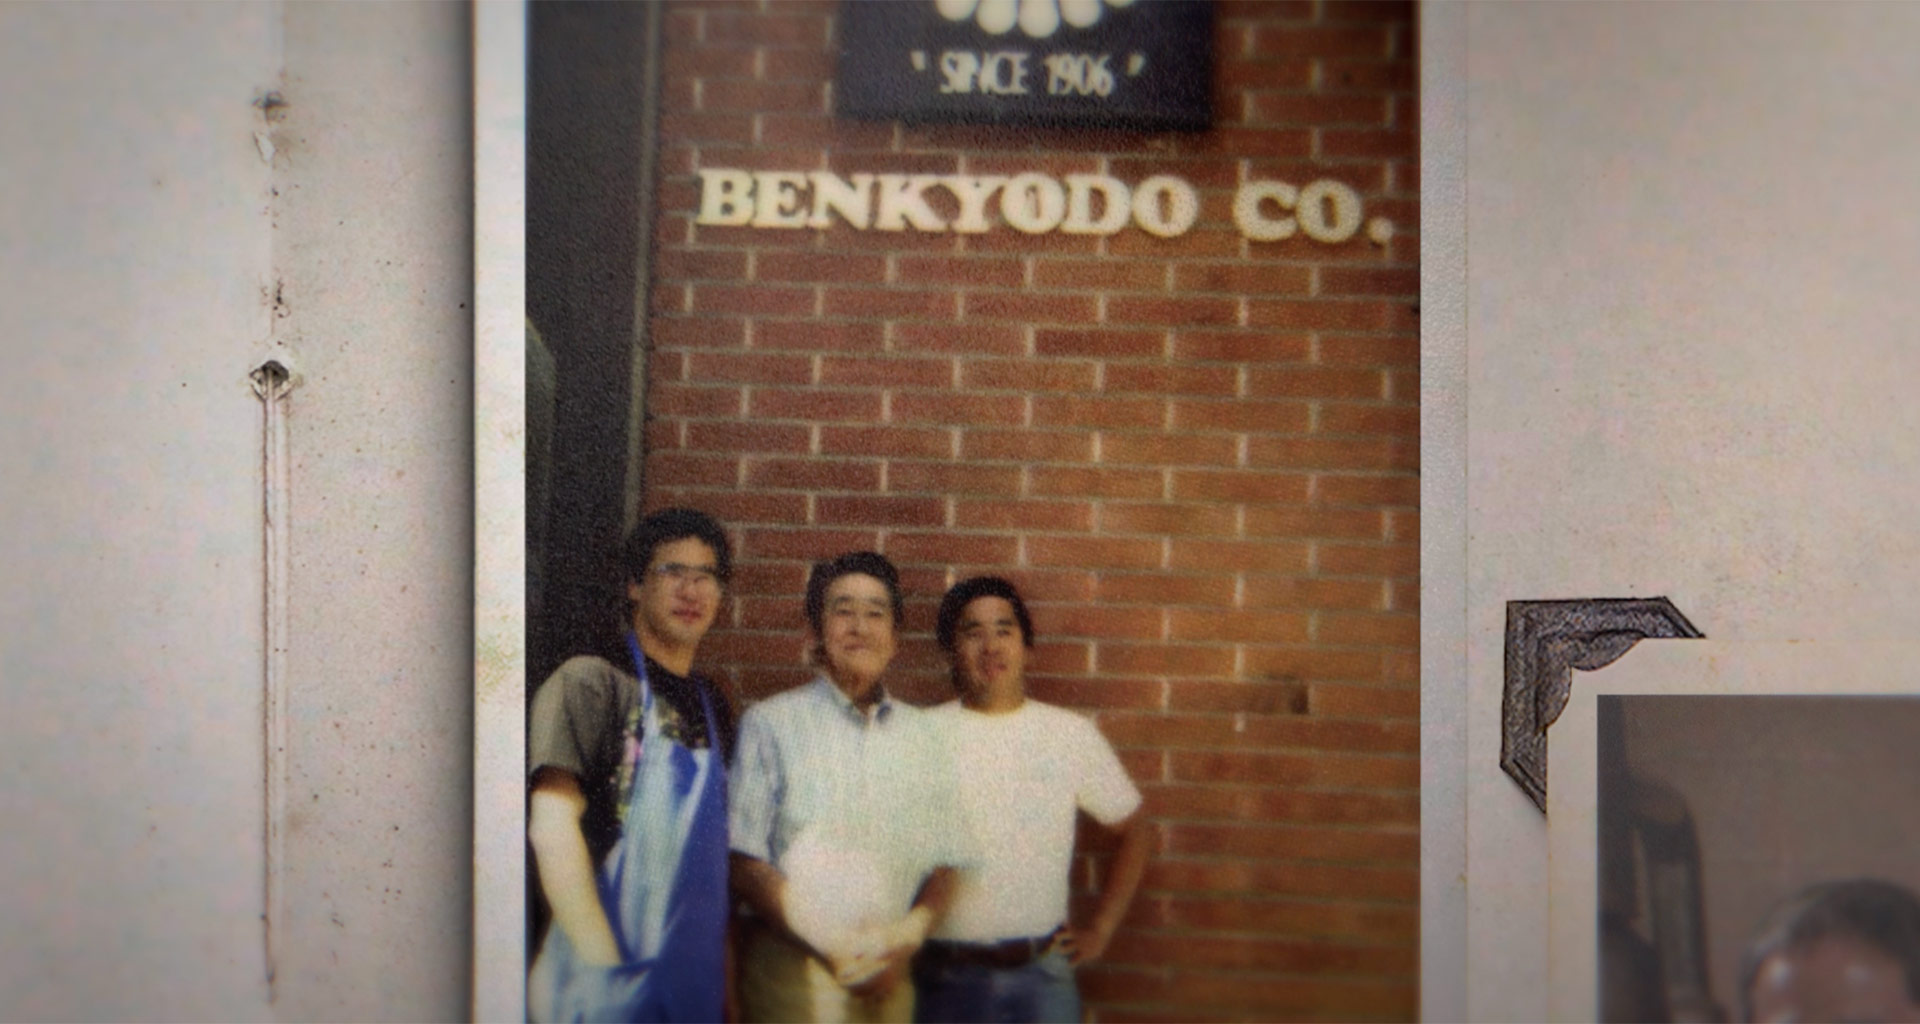 BENKYODO - The Last Manju Shop in J-Town